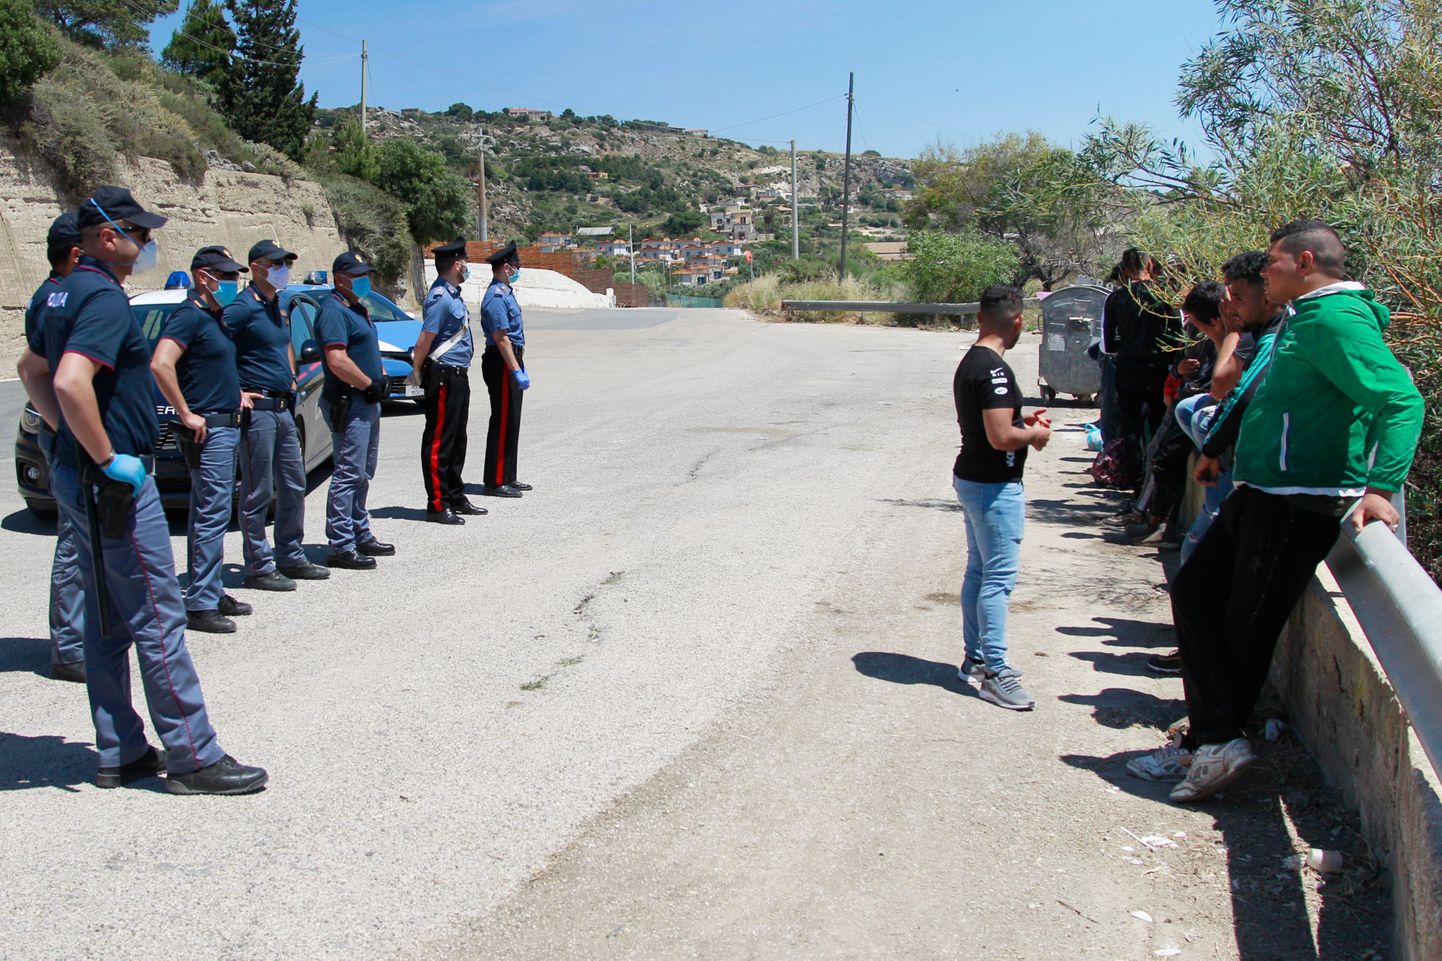 Agrigento linna lähedal Sitsiilia lõunaosas kontrollivad politseinikud migrante. 24.05.2020